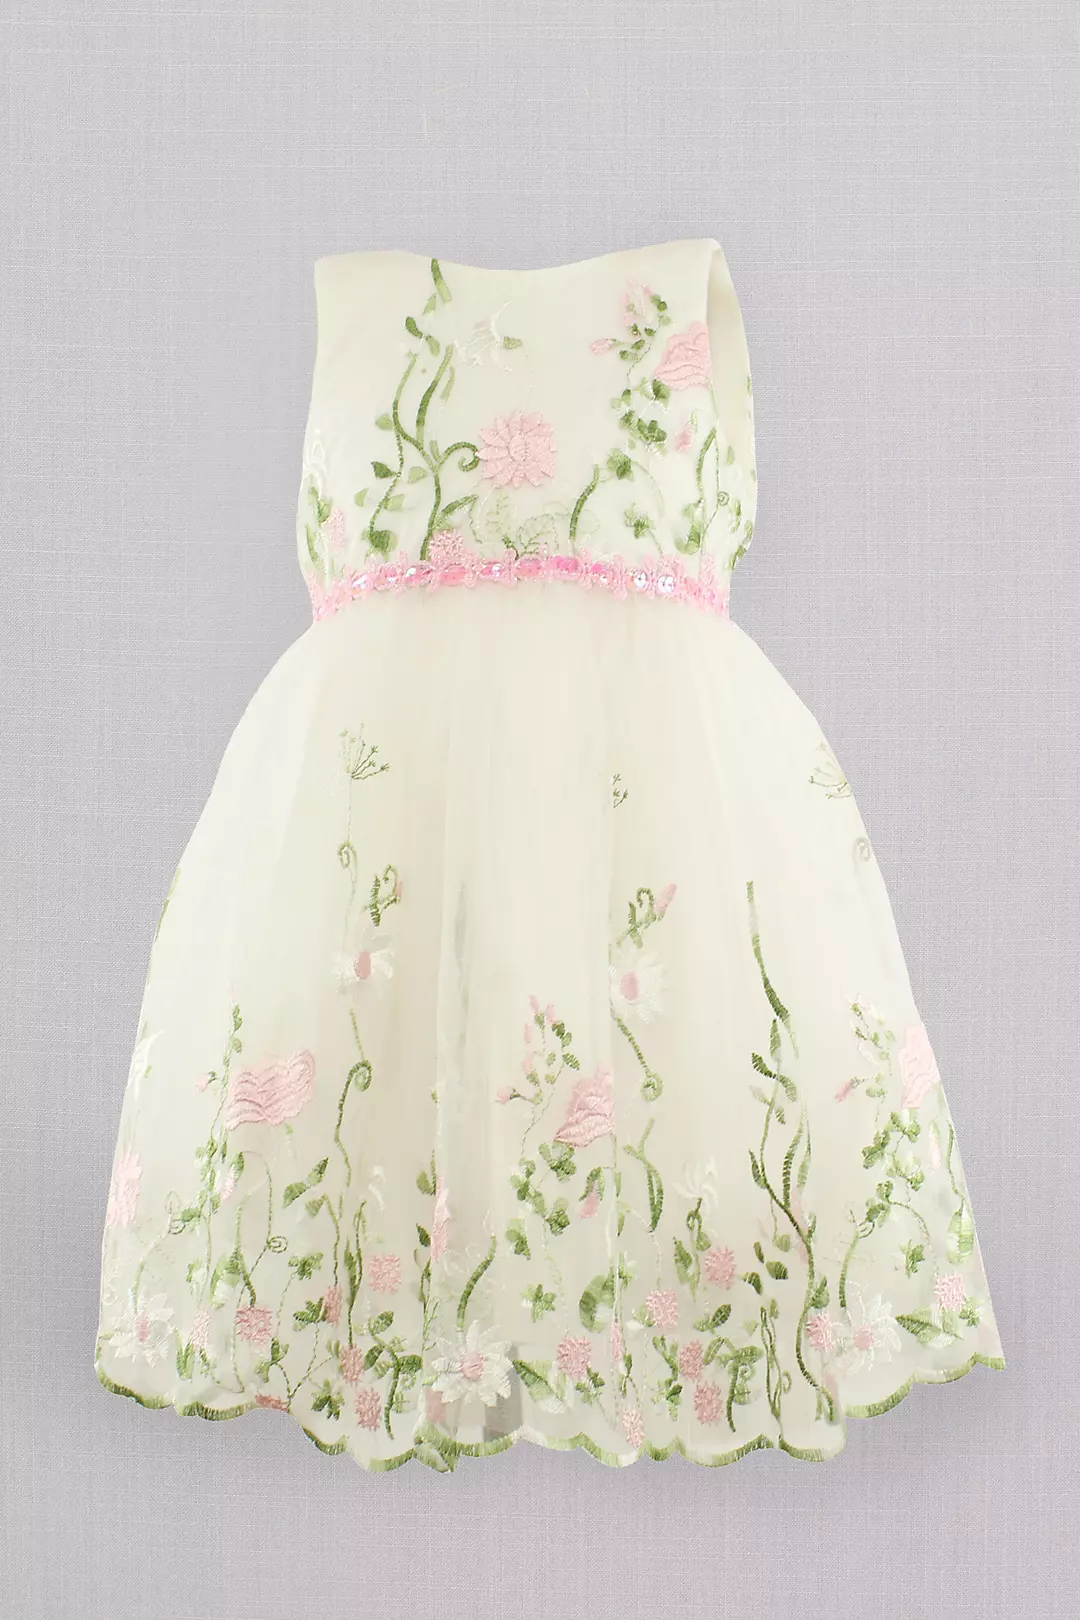 Sleeveless Embroidered Tulle Flower Girl Dress Image